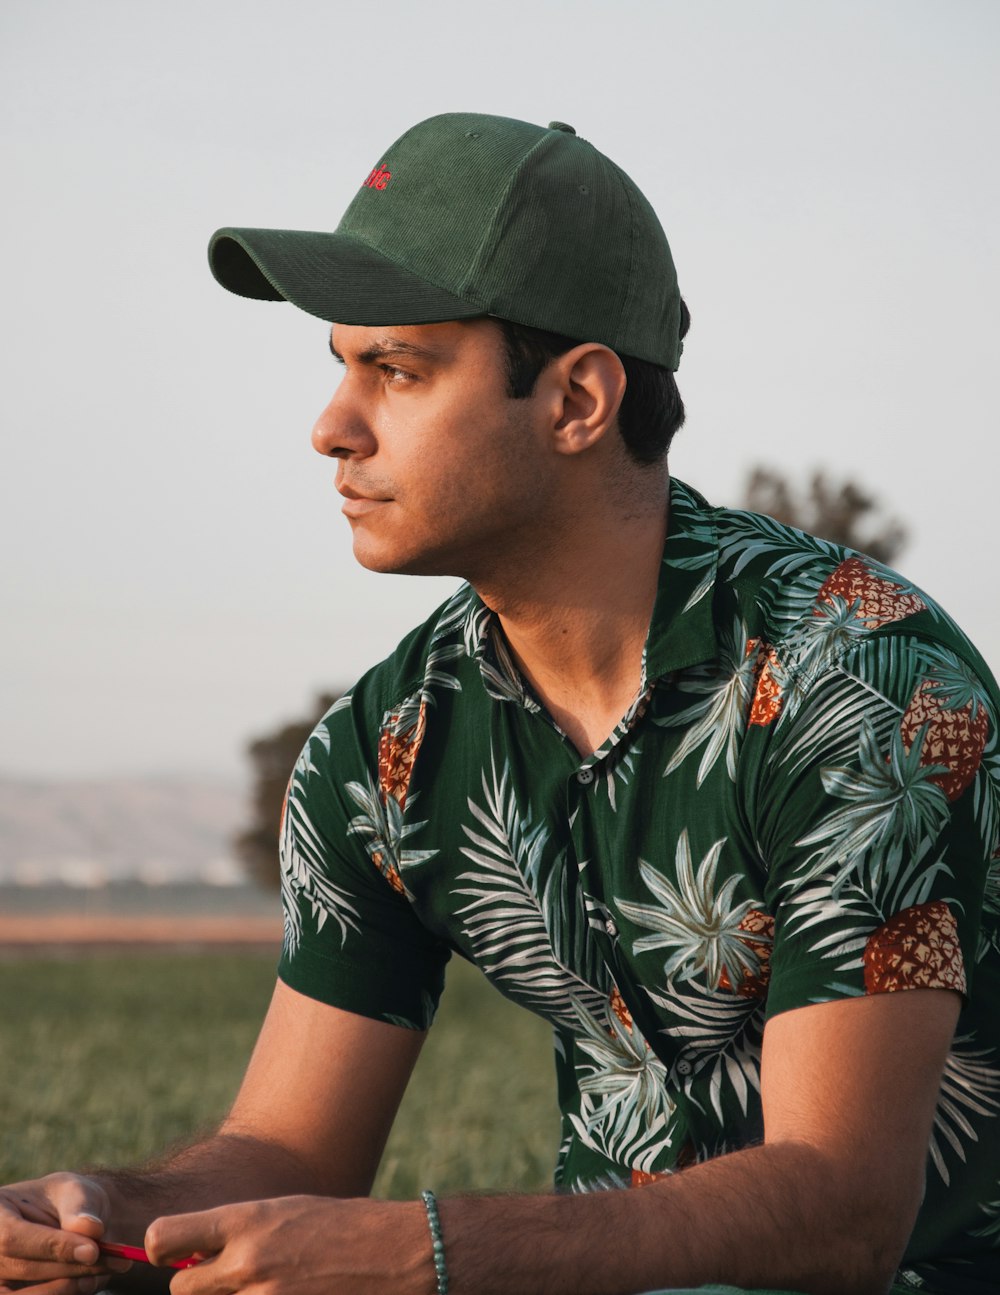 a man sitting in a field wearing a green hat